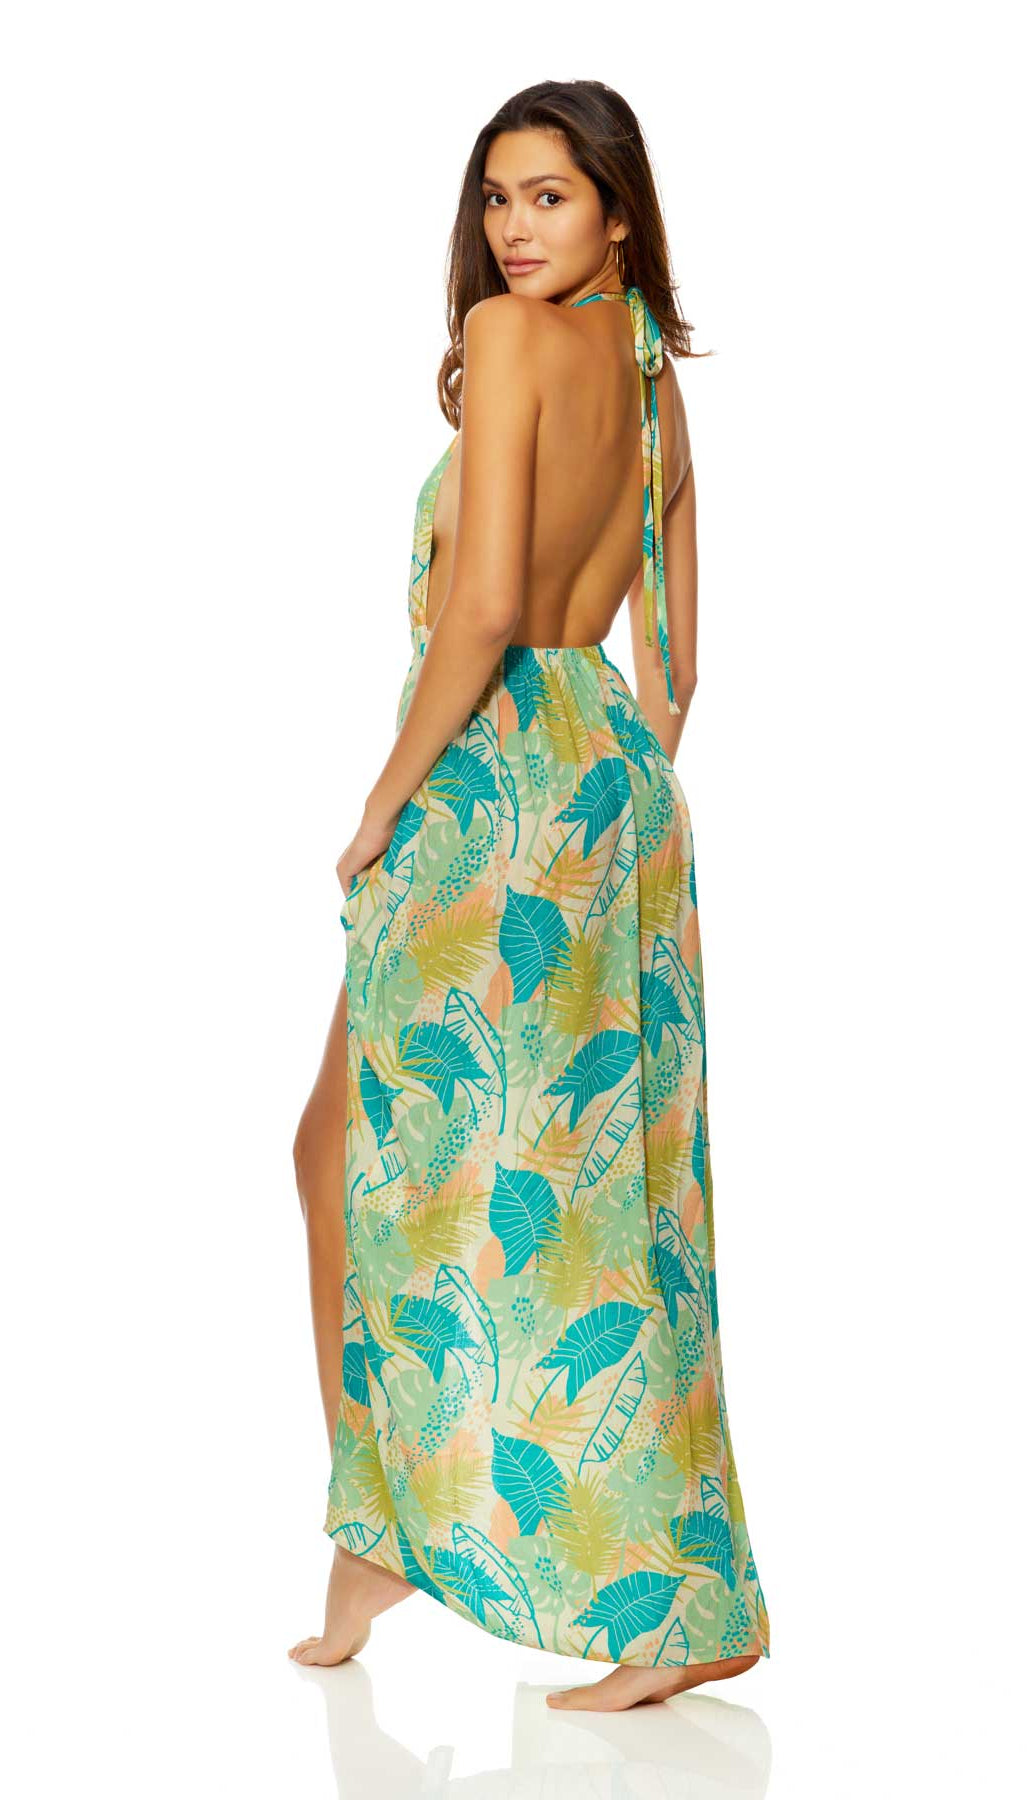 Ibiza: Tahiti Low V Halter Neck Dress Cover Up